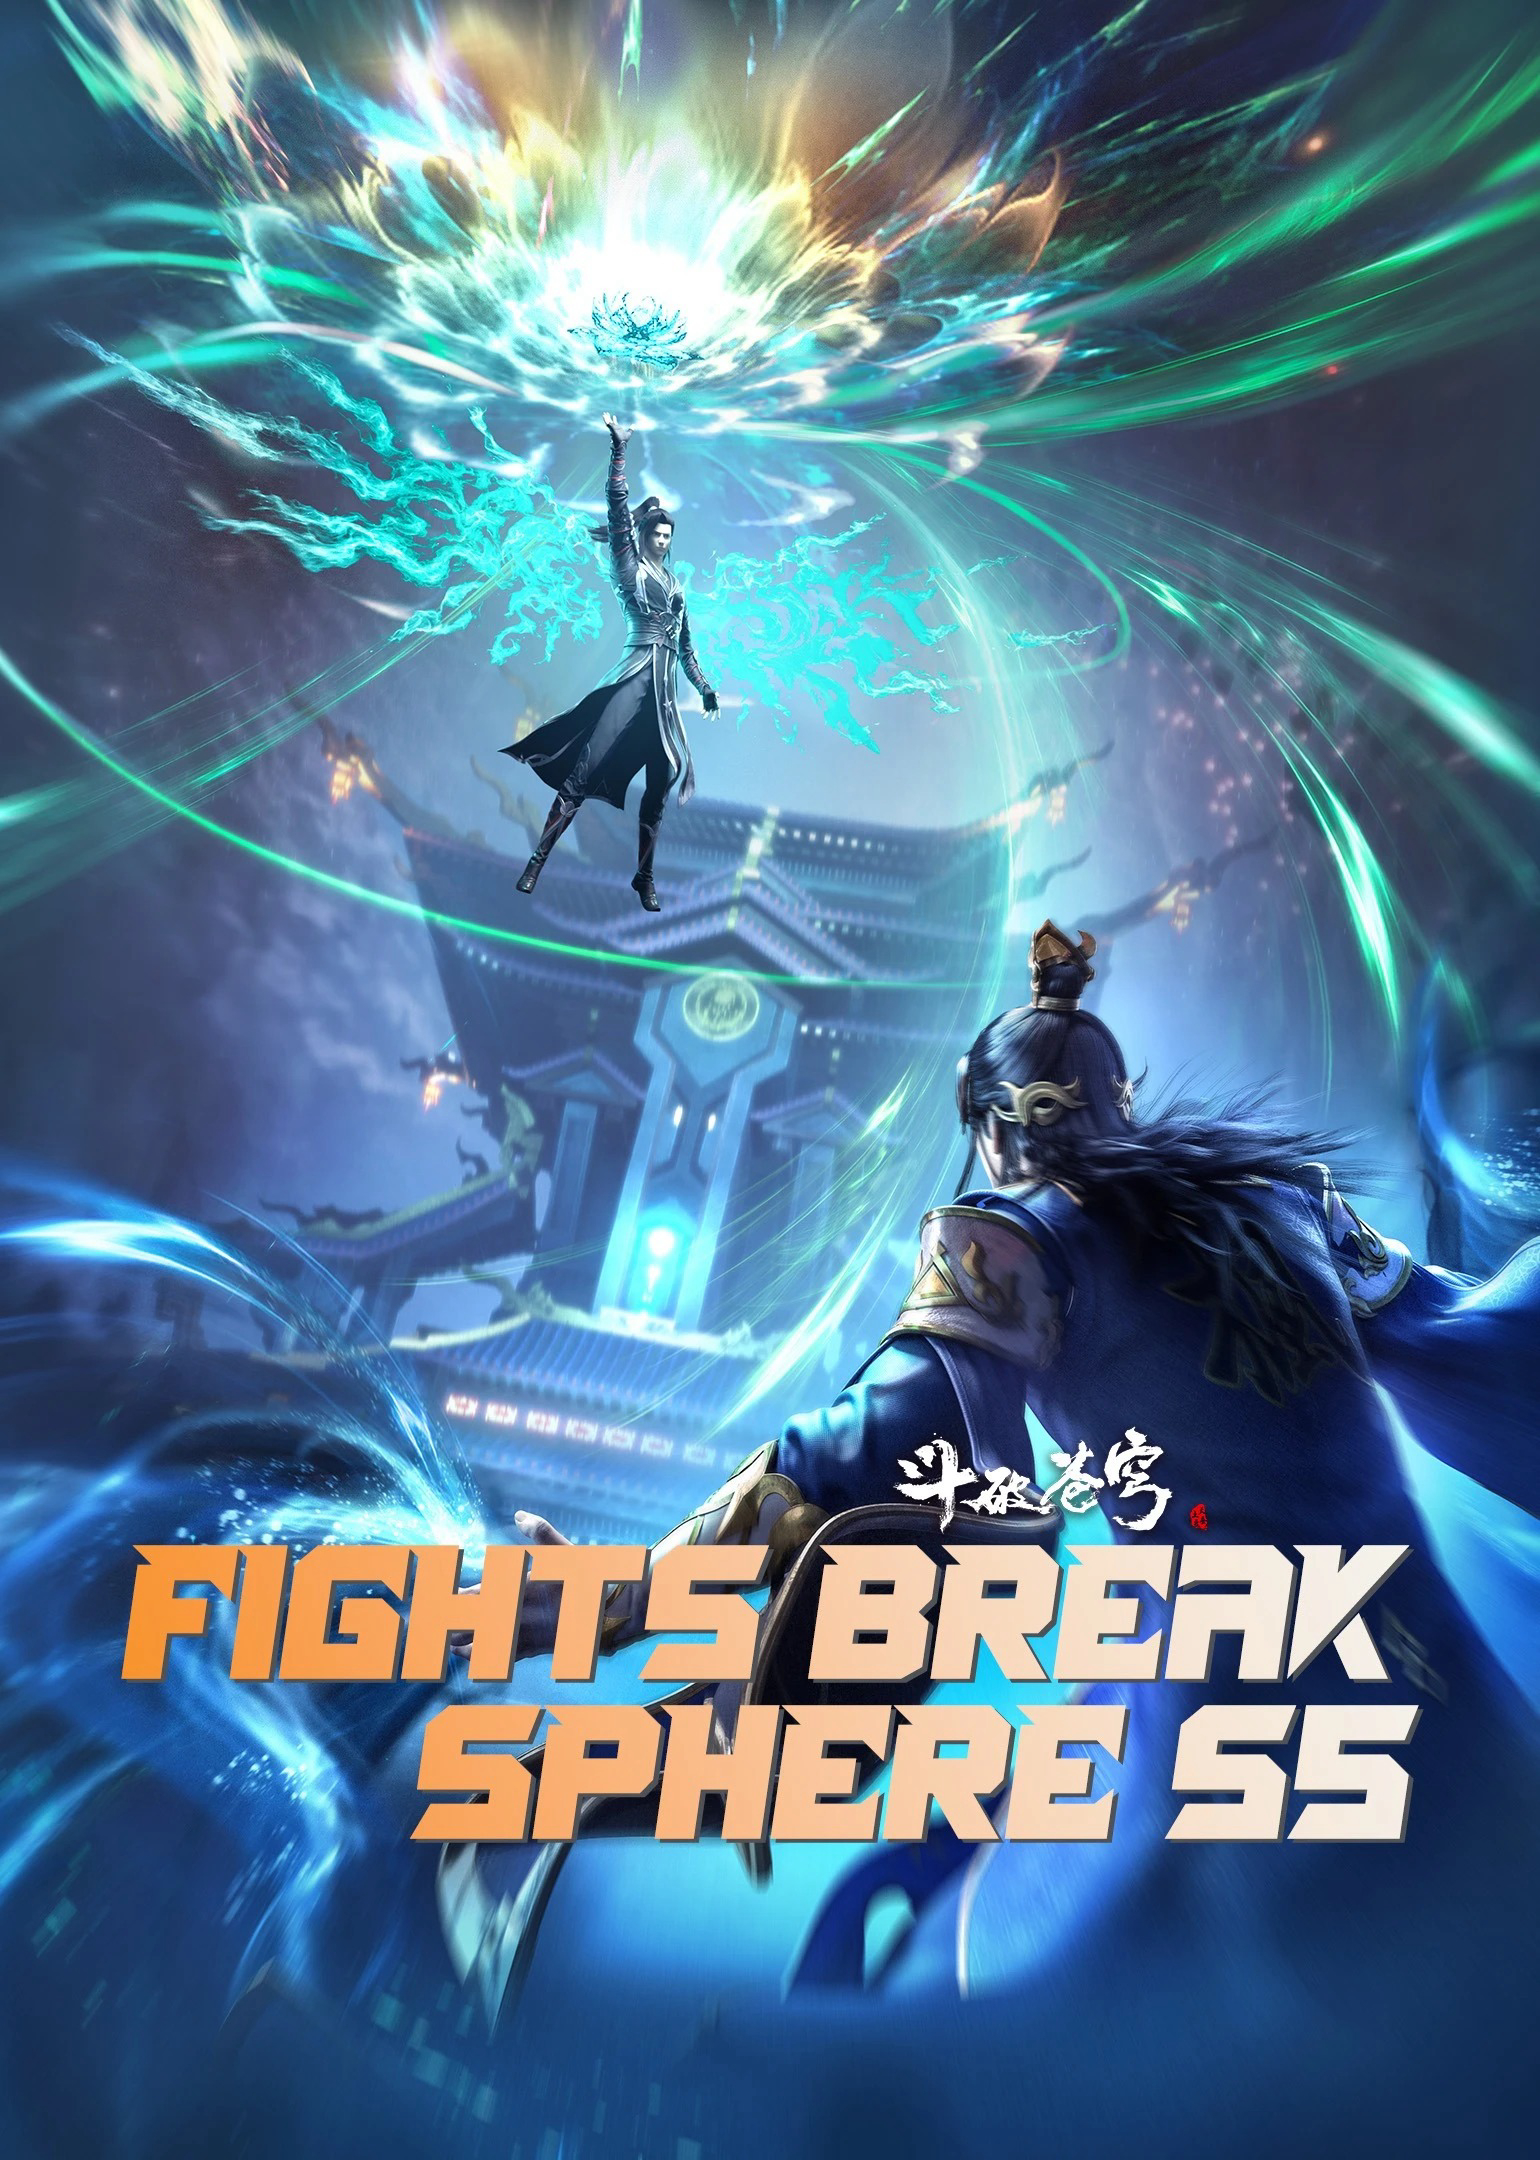 Đấu Phá Thương Khung 5 - Fights Break Sphere S5